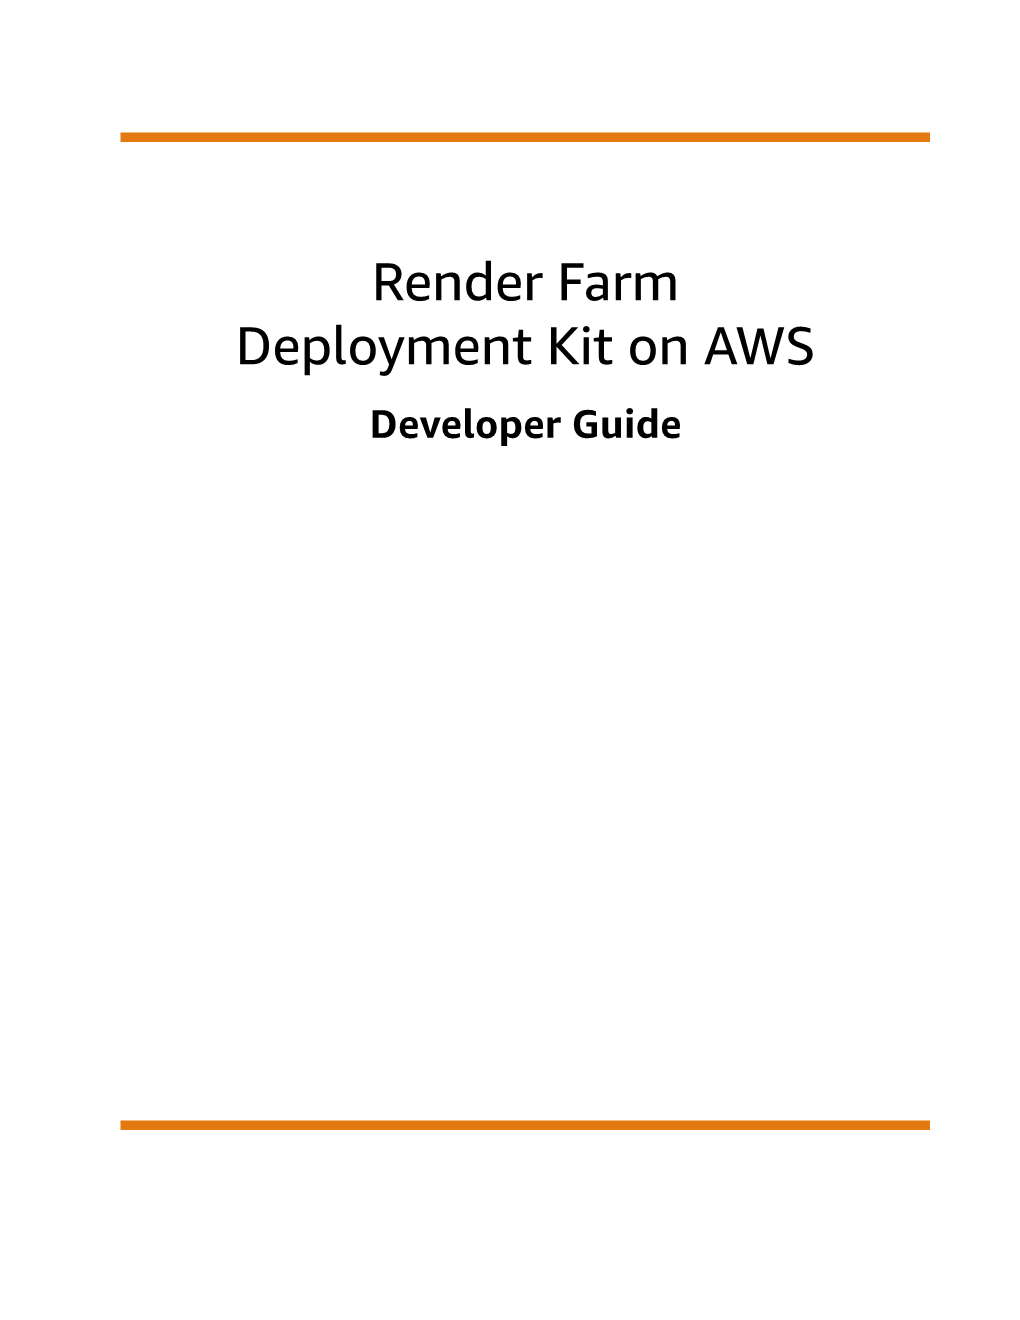 Render Farm Deployment Kit on AWS Developer Guide Render Farm Deployment Kit on AWS Developer Guide